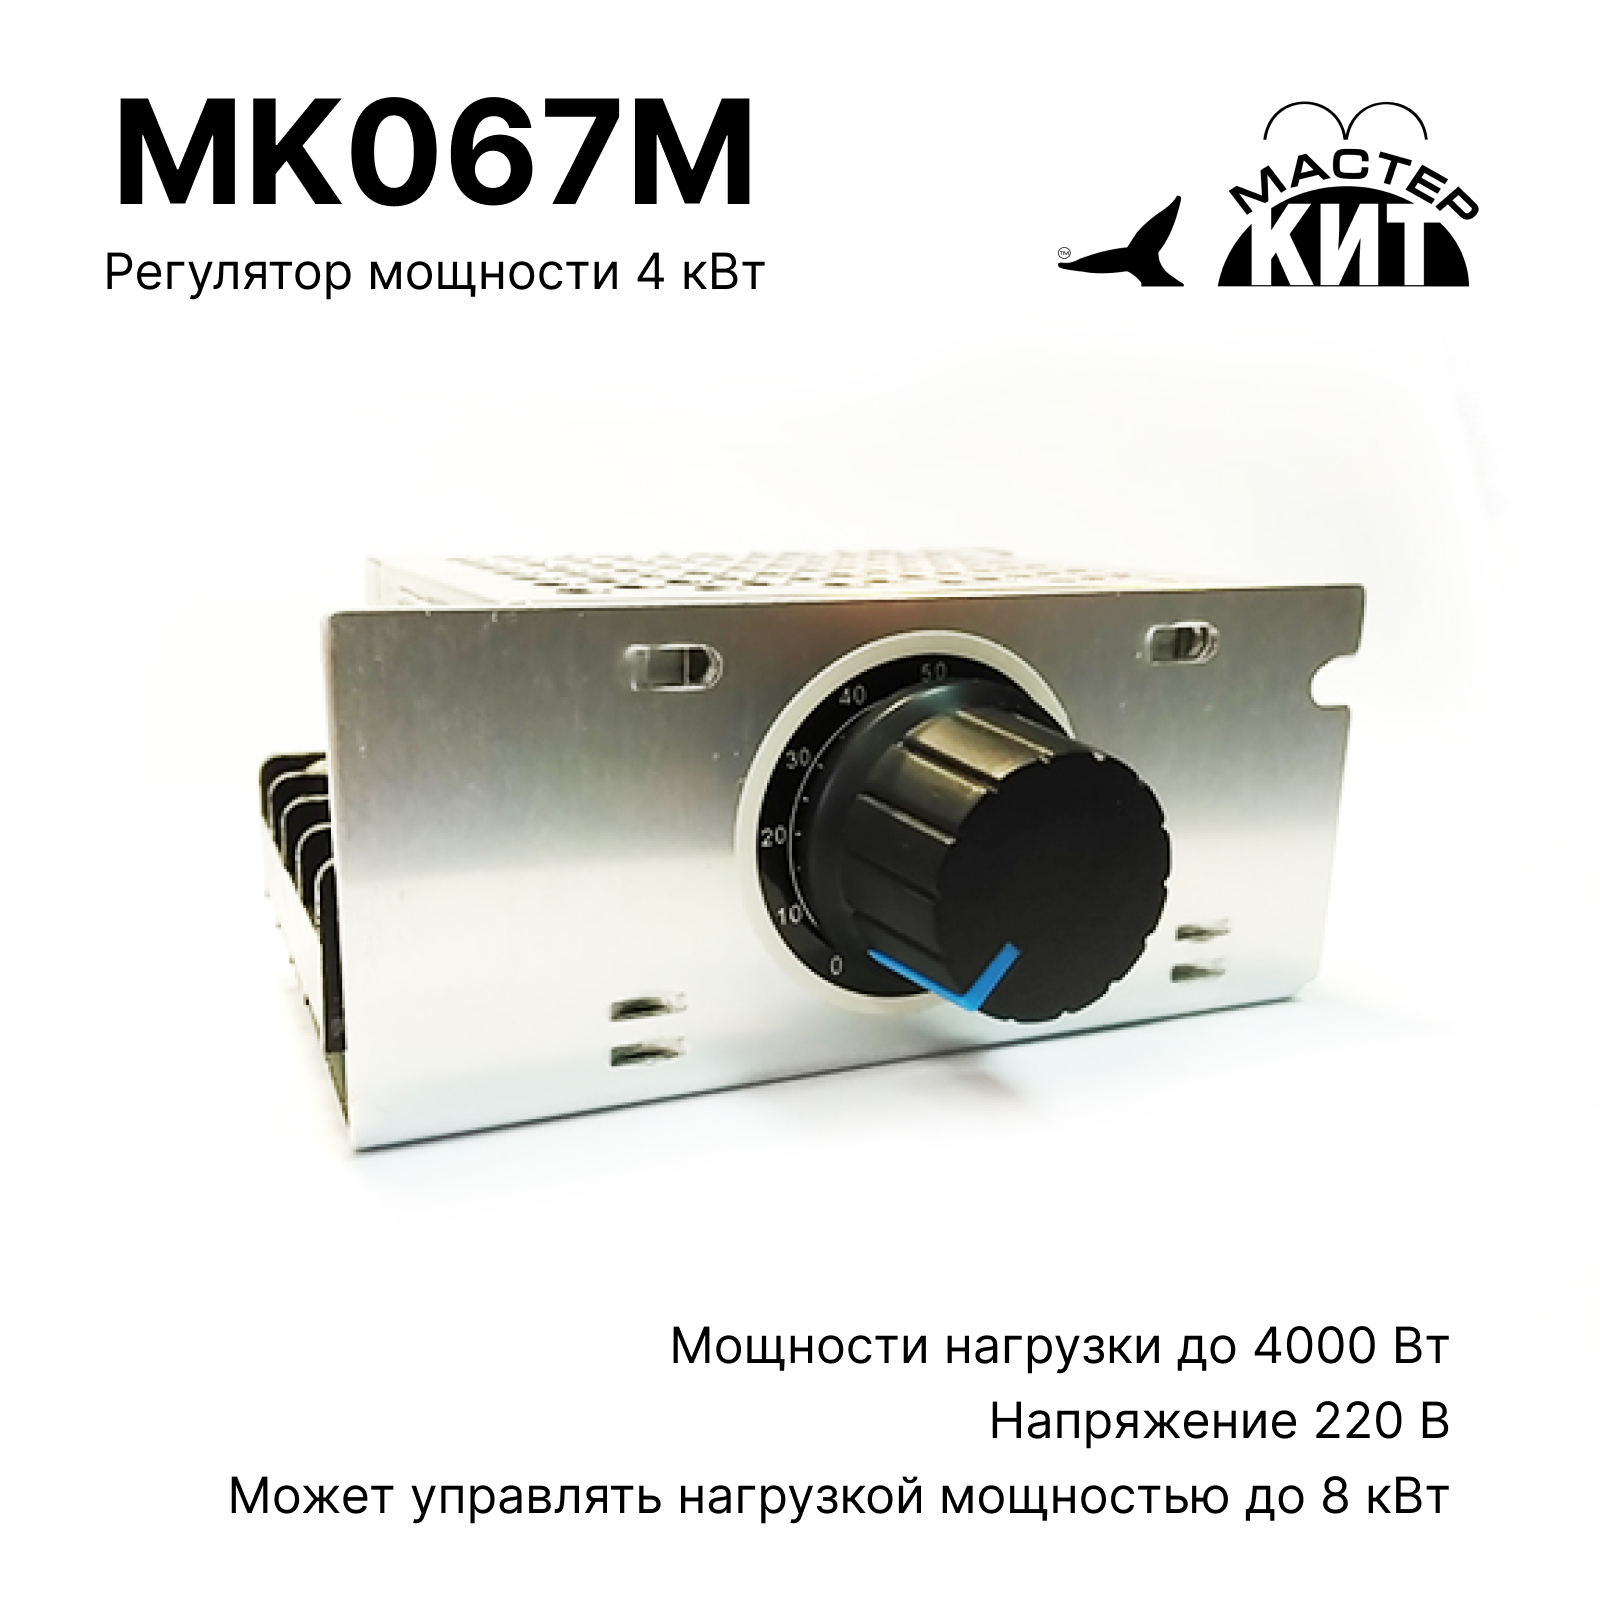 Регулятор мощности Мастер Кит MK067M 4 кВт (в корпусе с радиатором, 220В, 18А) регулятор мощности heliosa